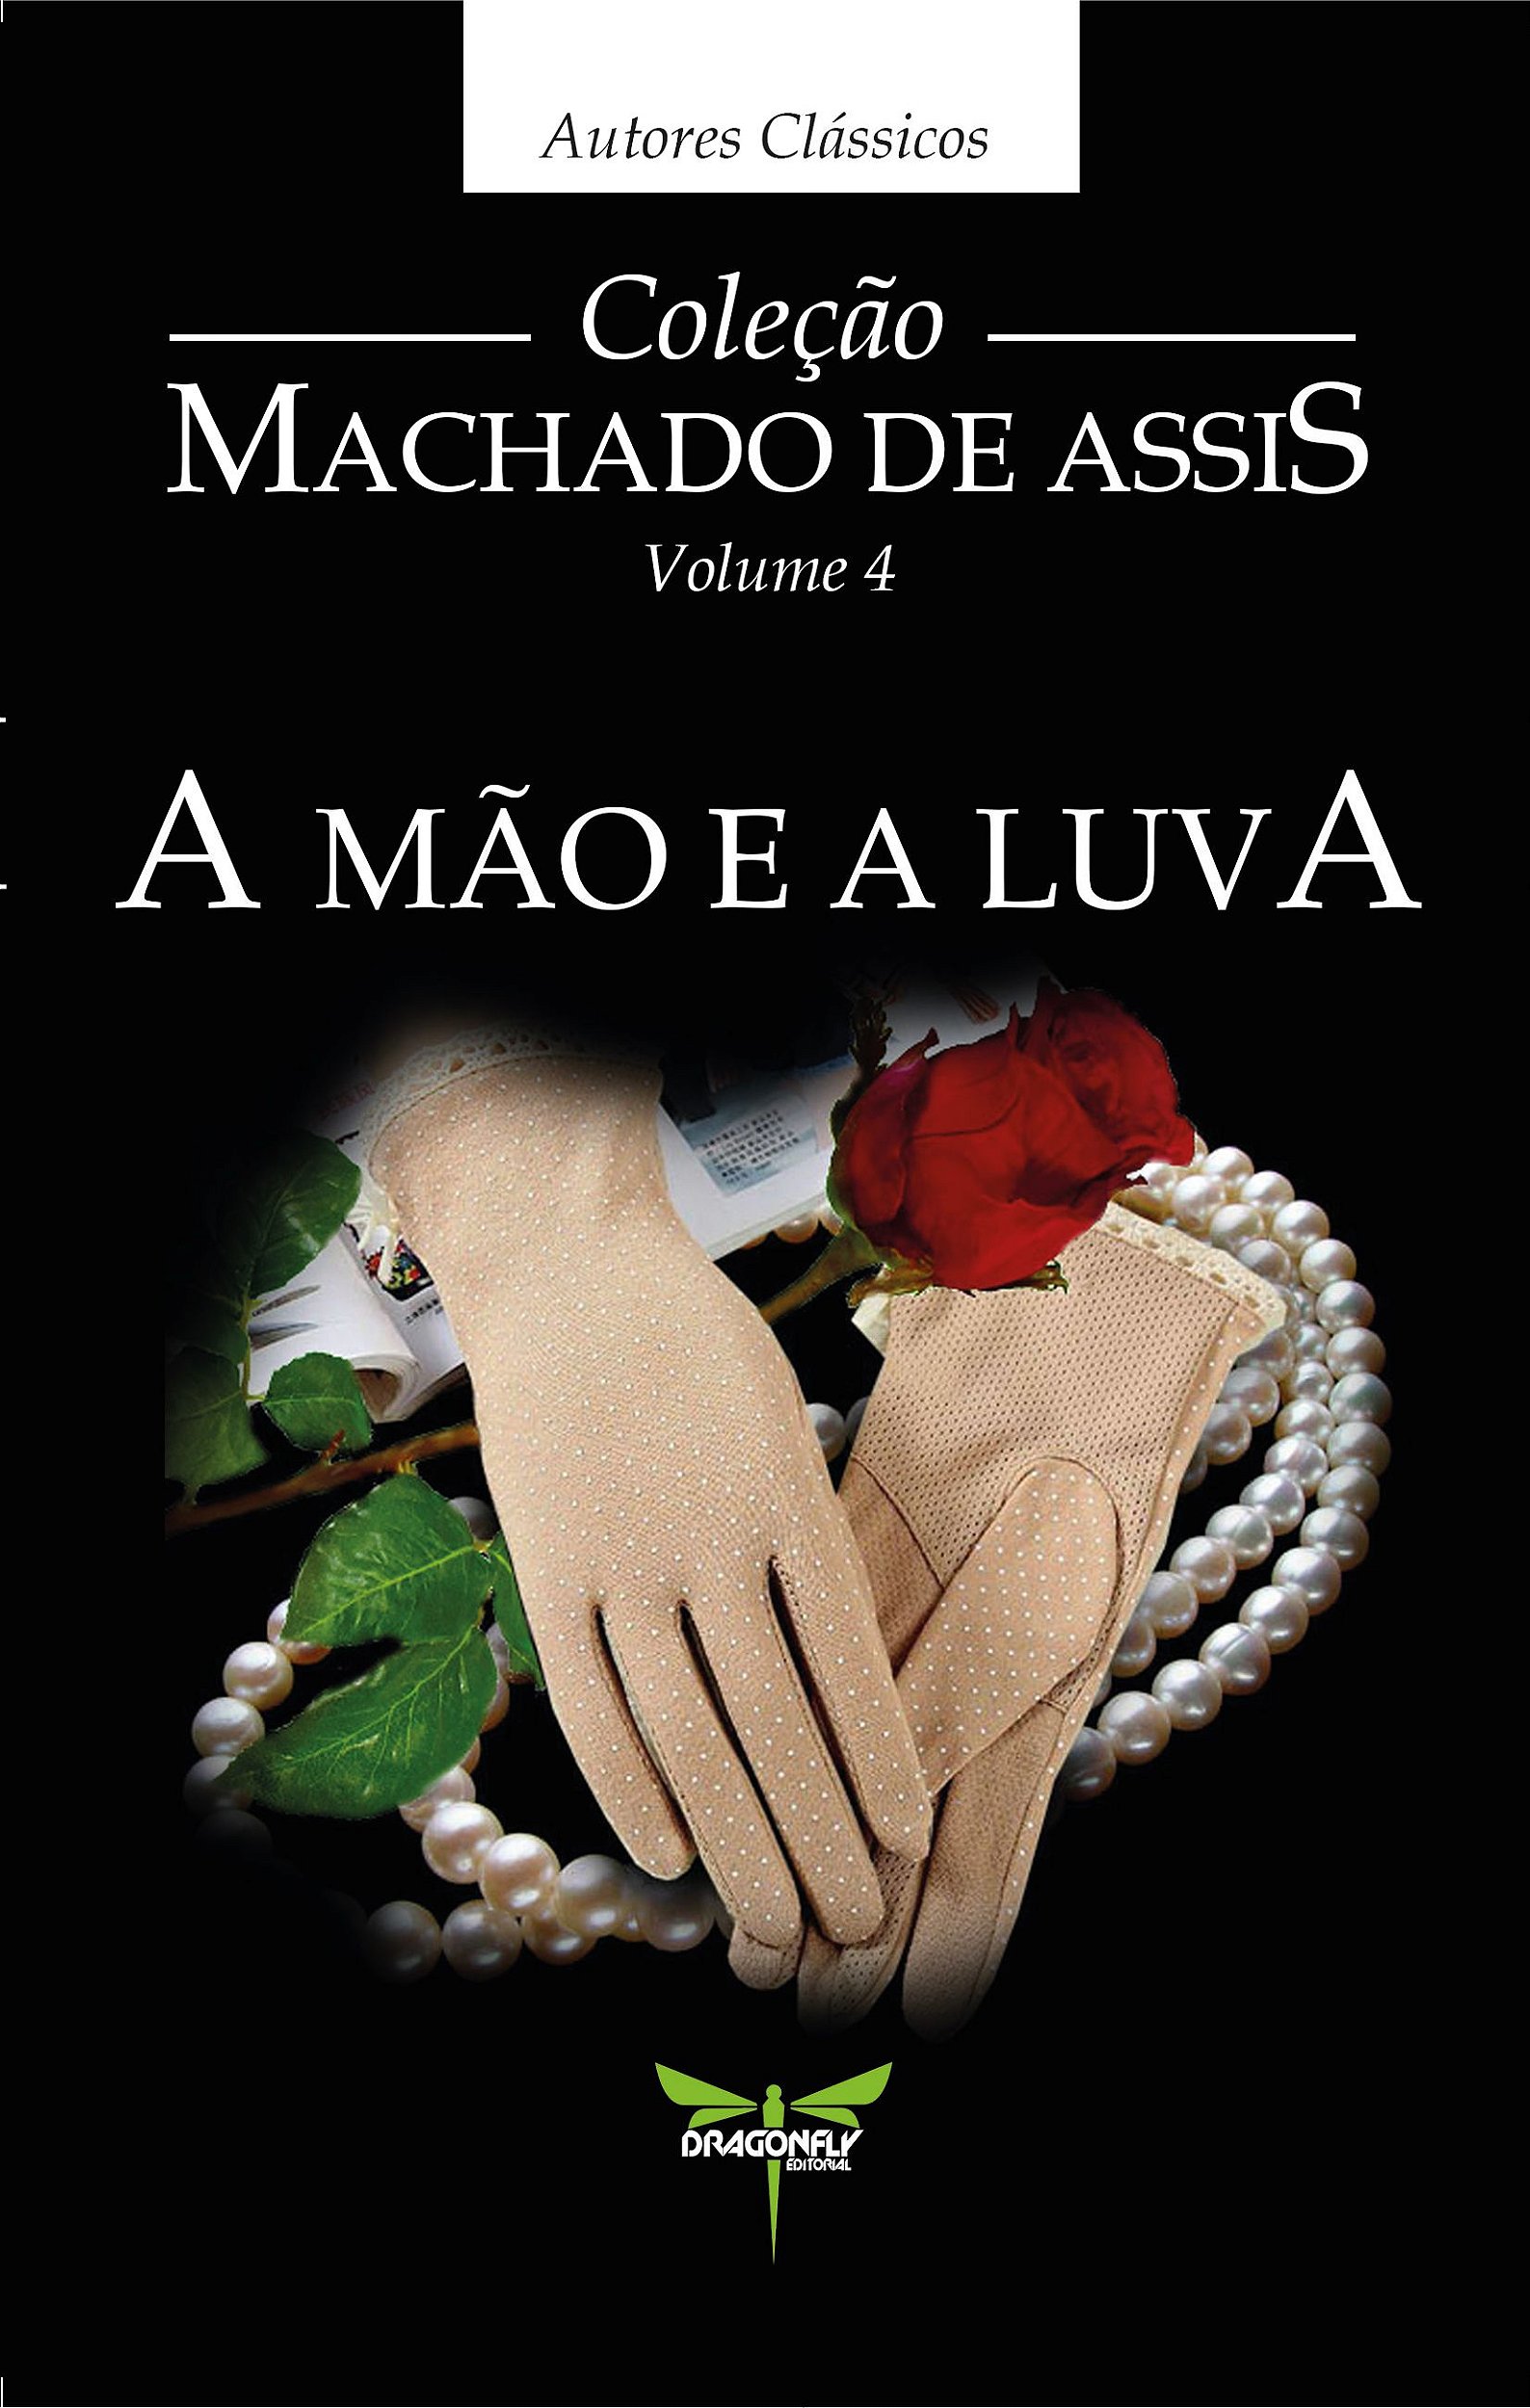 A mão e a luva: Guiomar, a heroína romântica de Machado de Assis — Querido  Clássico